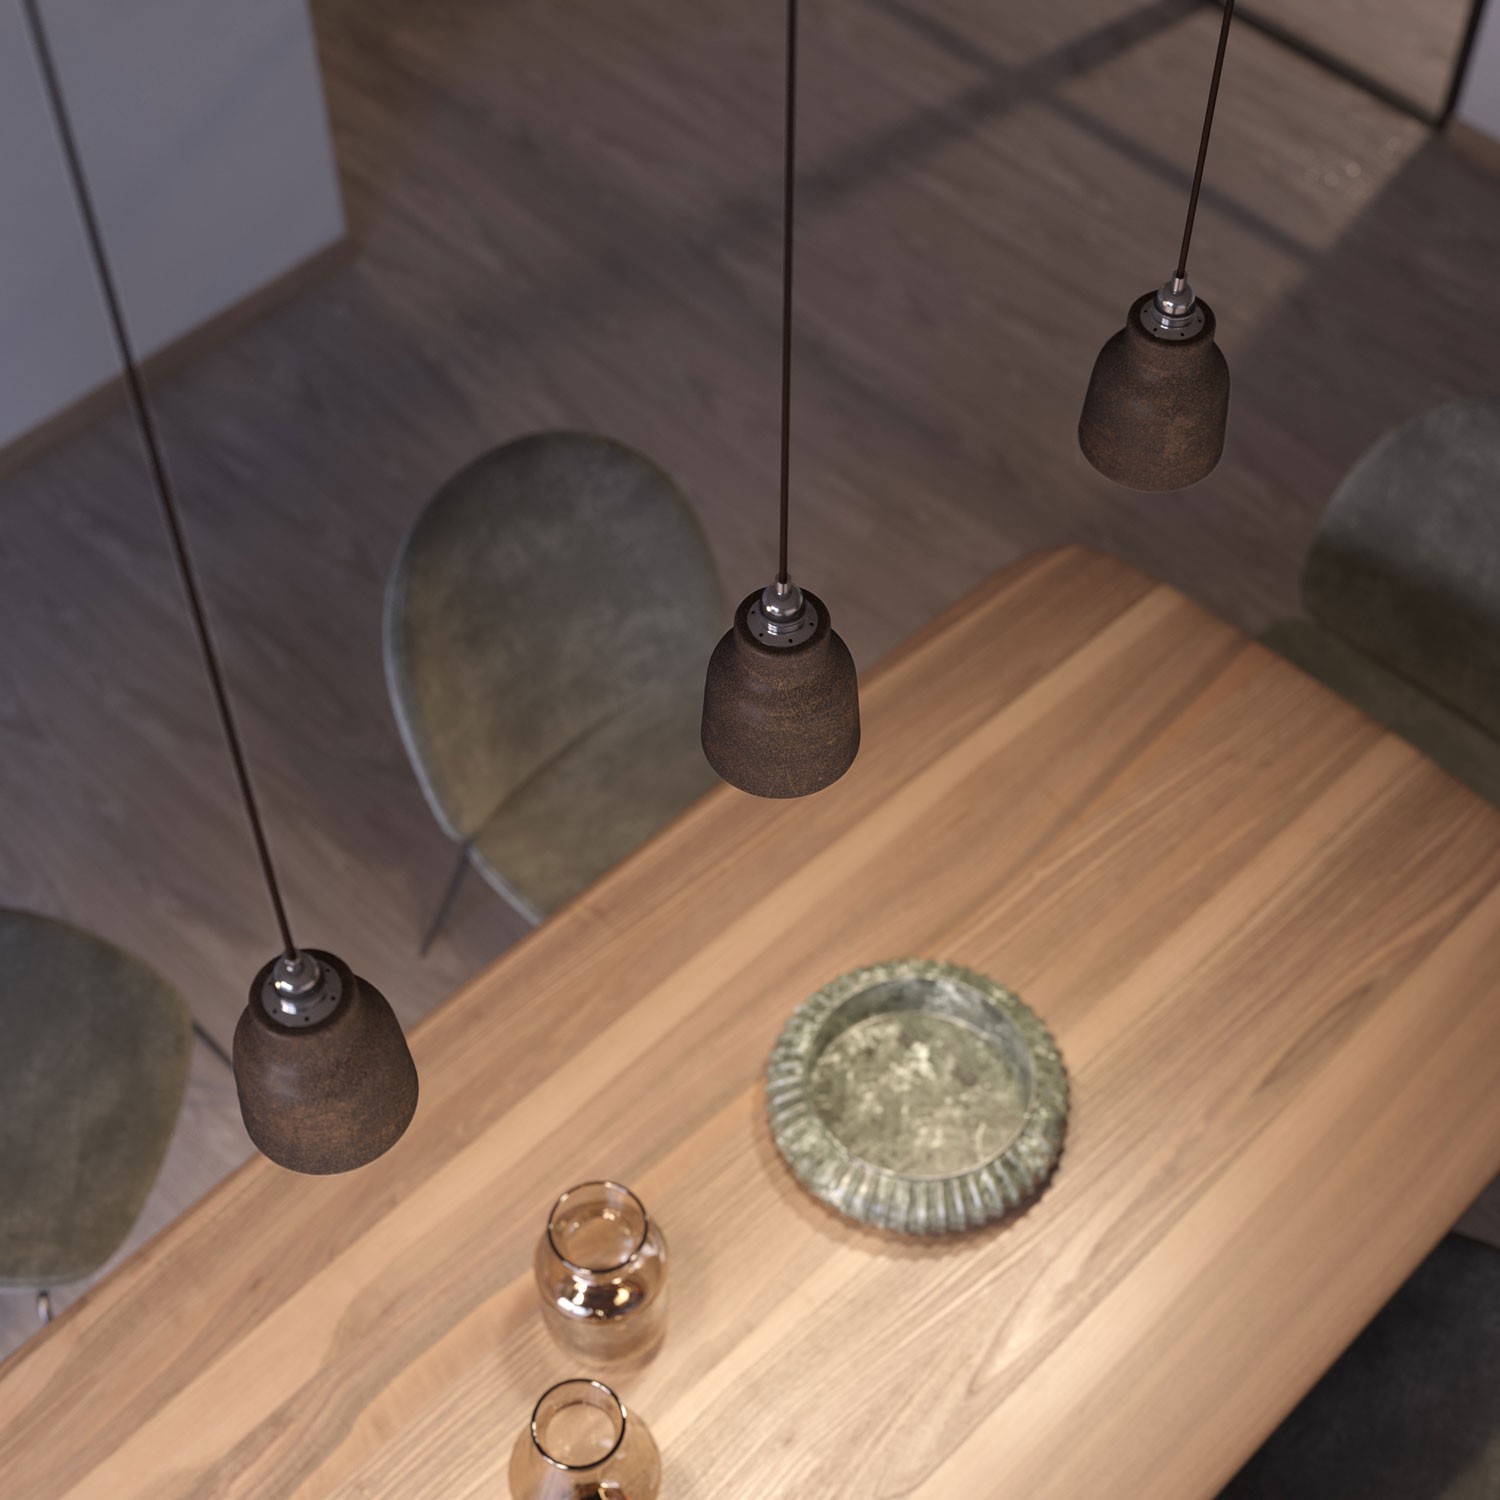 Pendelleuchte mit Textilkabel, vasenförmigem Lampenschirm aus Keramik und Metall-Zubehör - Hergestellt in Italien